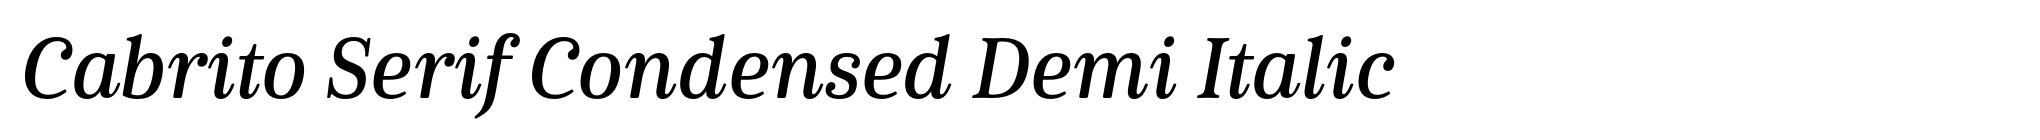 Cabrito Serif Condensed Demi Italic image